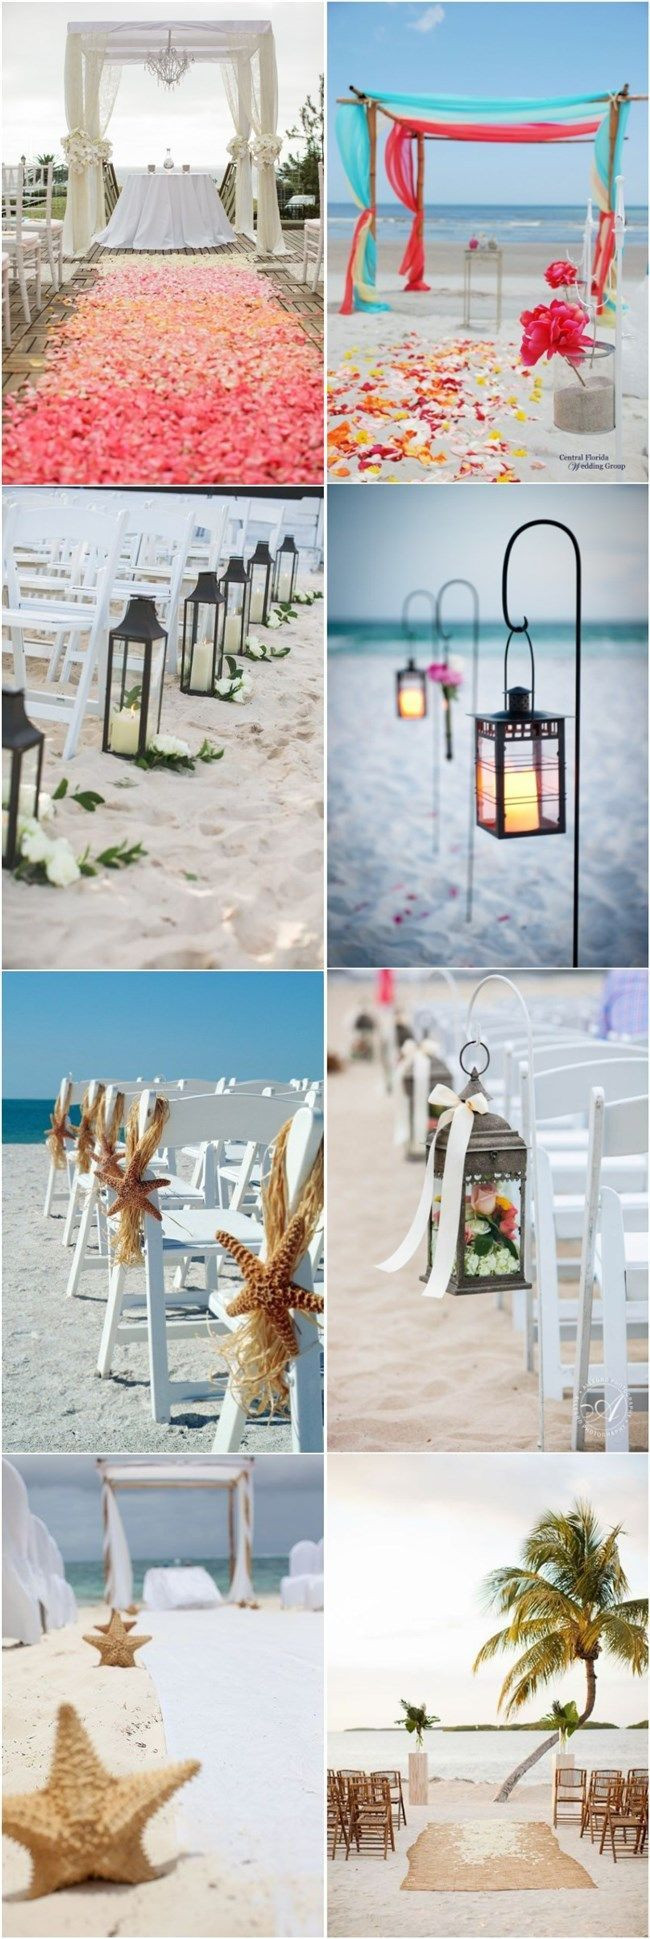 Beach Wedding Ideas Pinterest
 907 best images about Beach Wedding Ideas on Pinterest